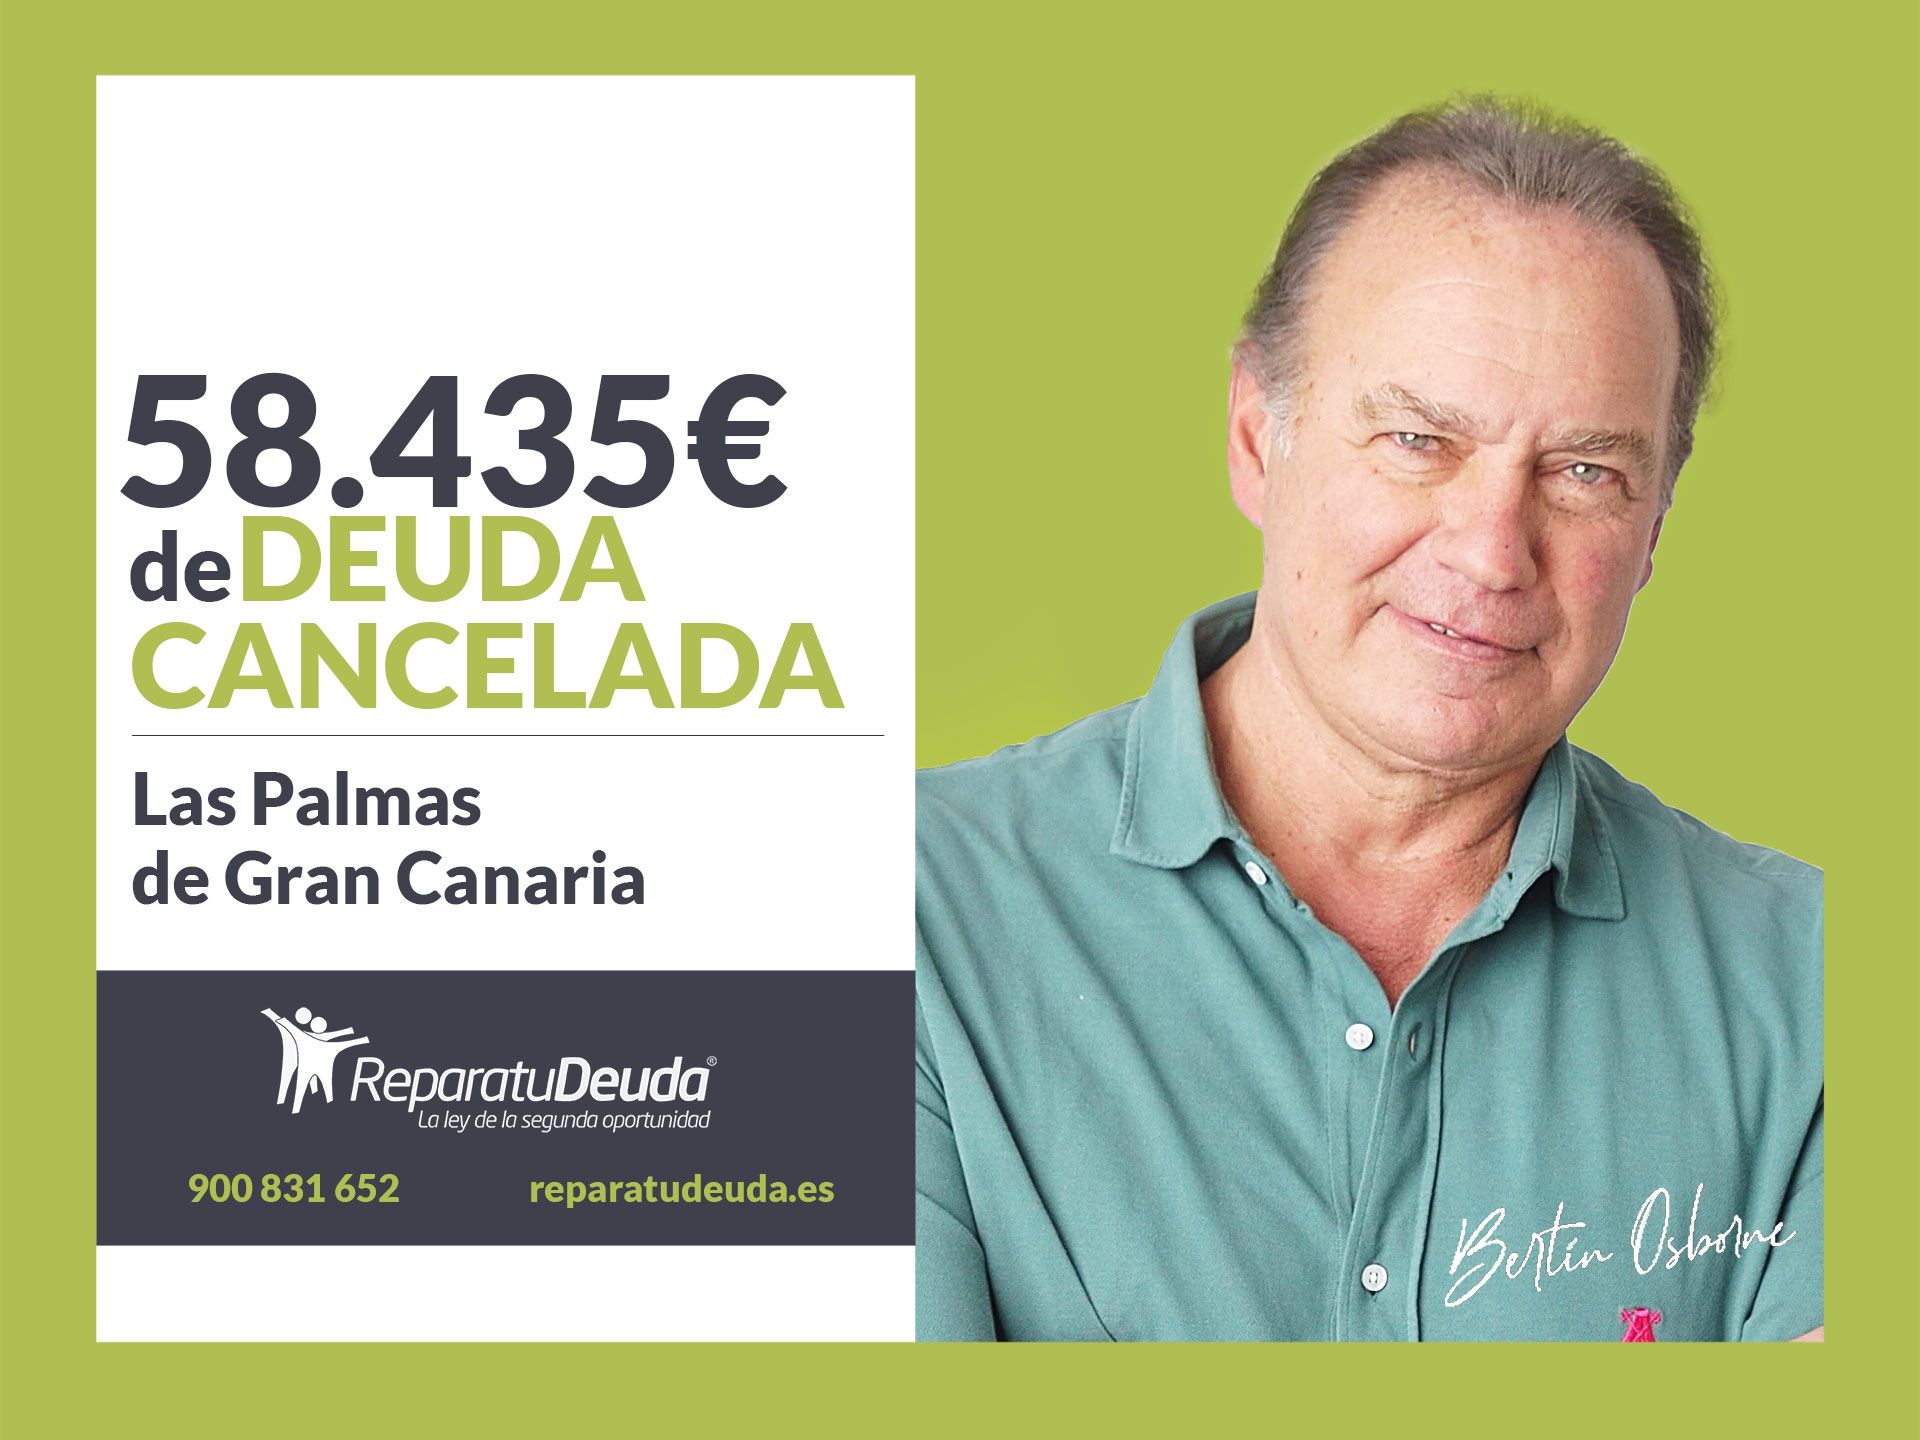 Repara tu Deuda cancela 58.435? en Las Palmas de Gran Canaria (Canarias) con la Ley de Segunda Oportunidad